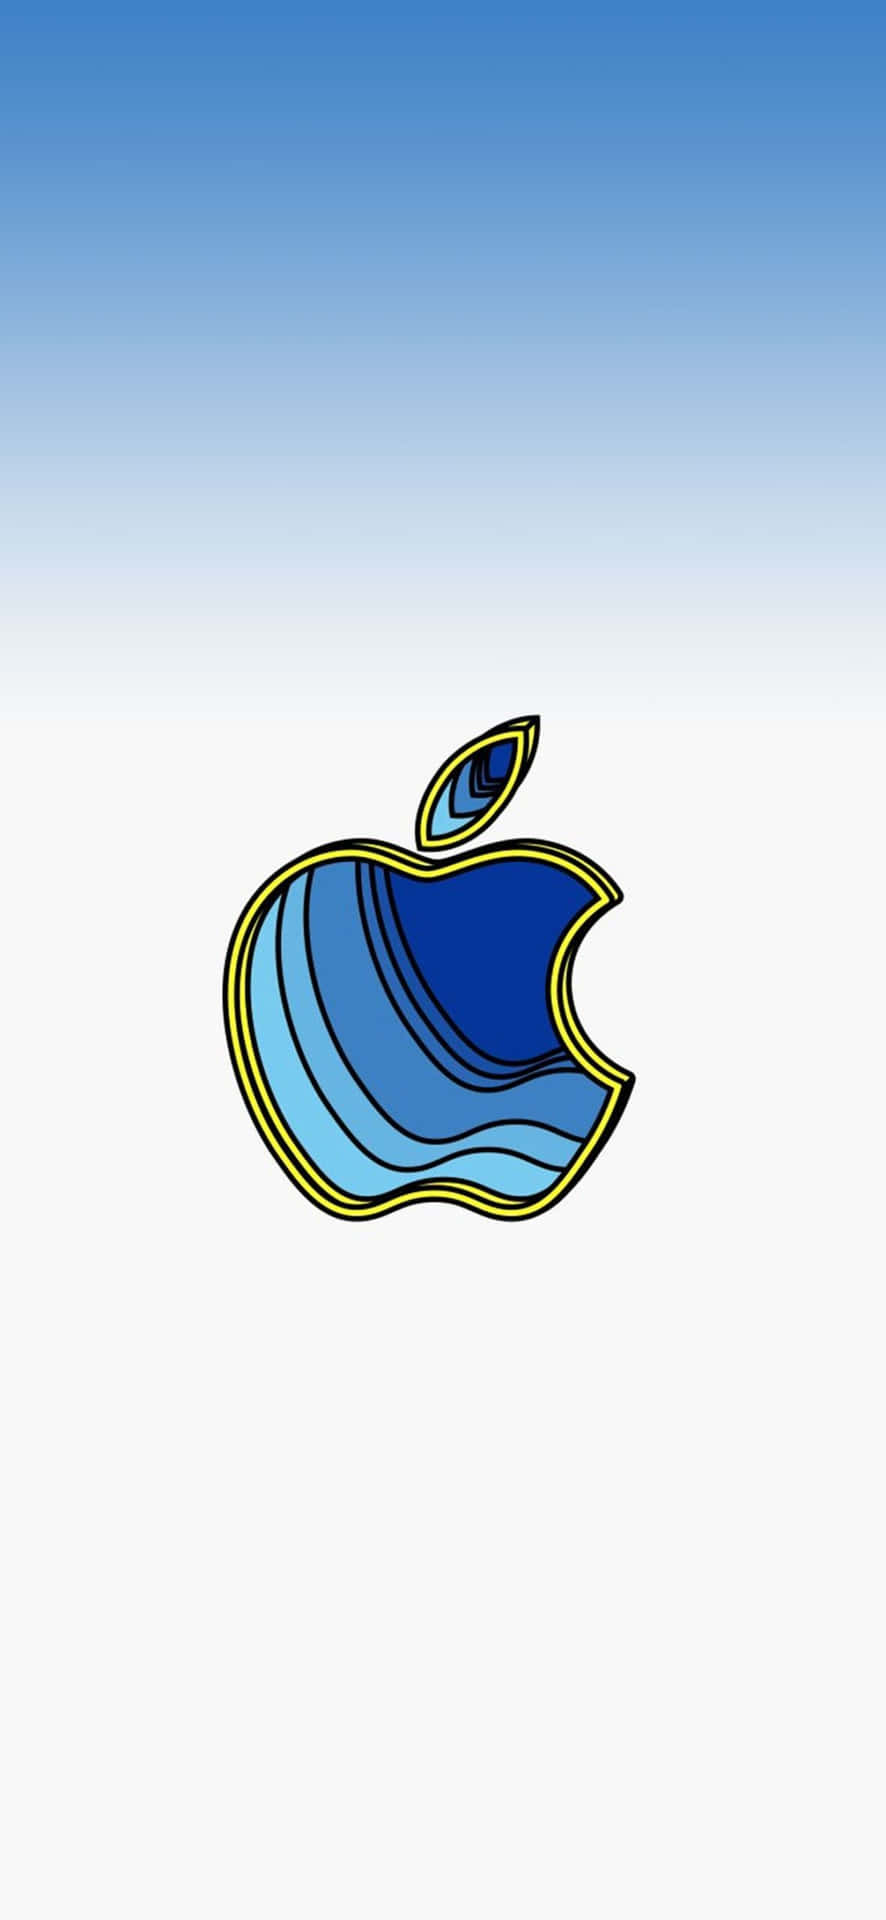 3deffekt Logotyp Fantastiskt Äpple Hd Iphone Wallpaper